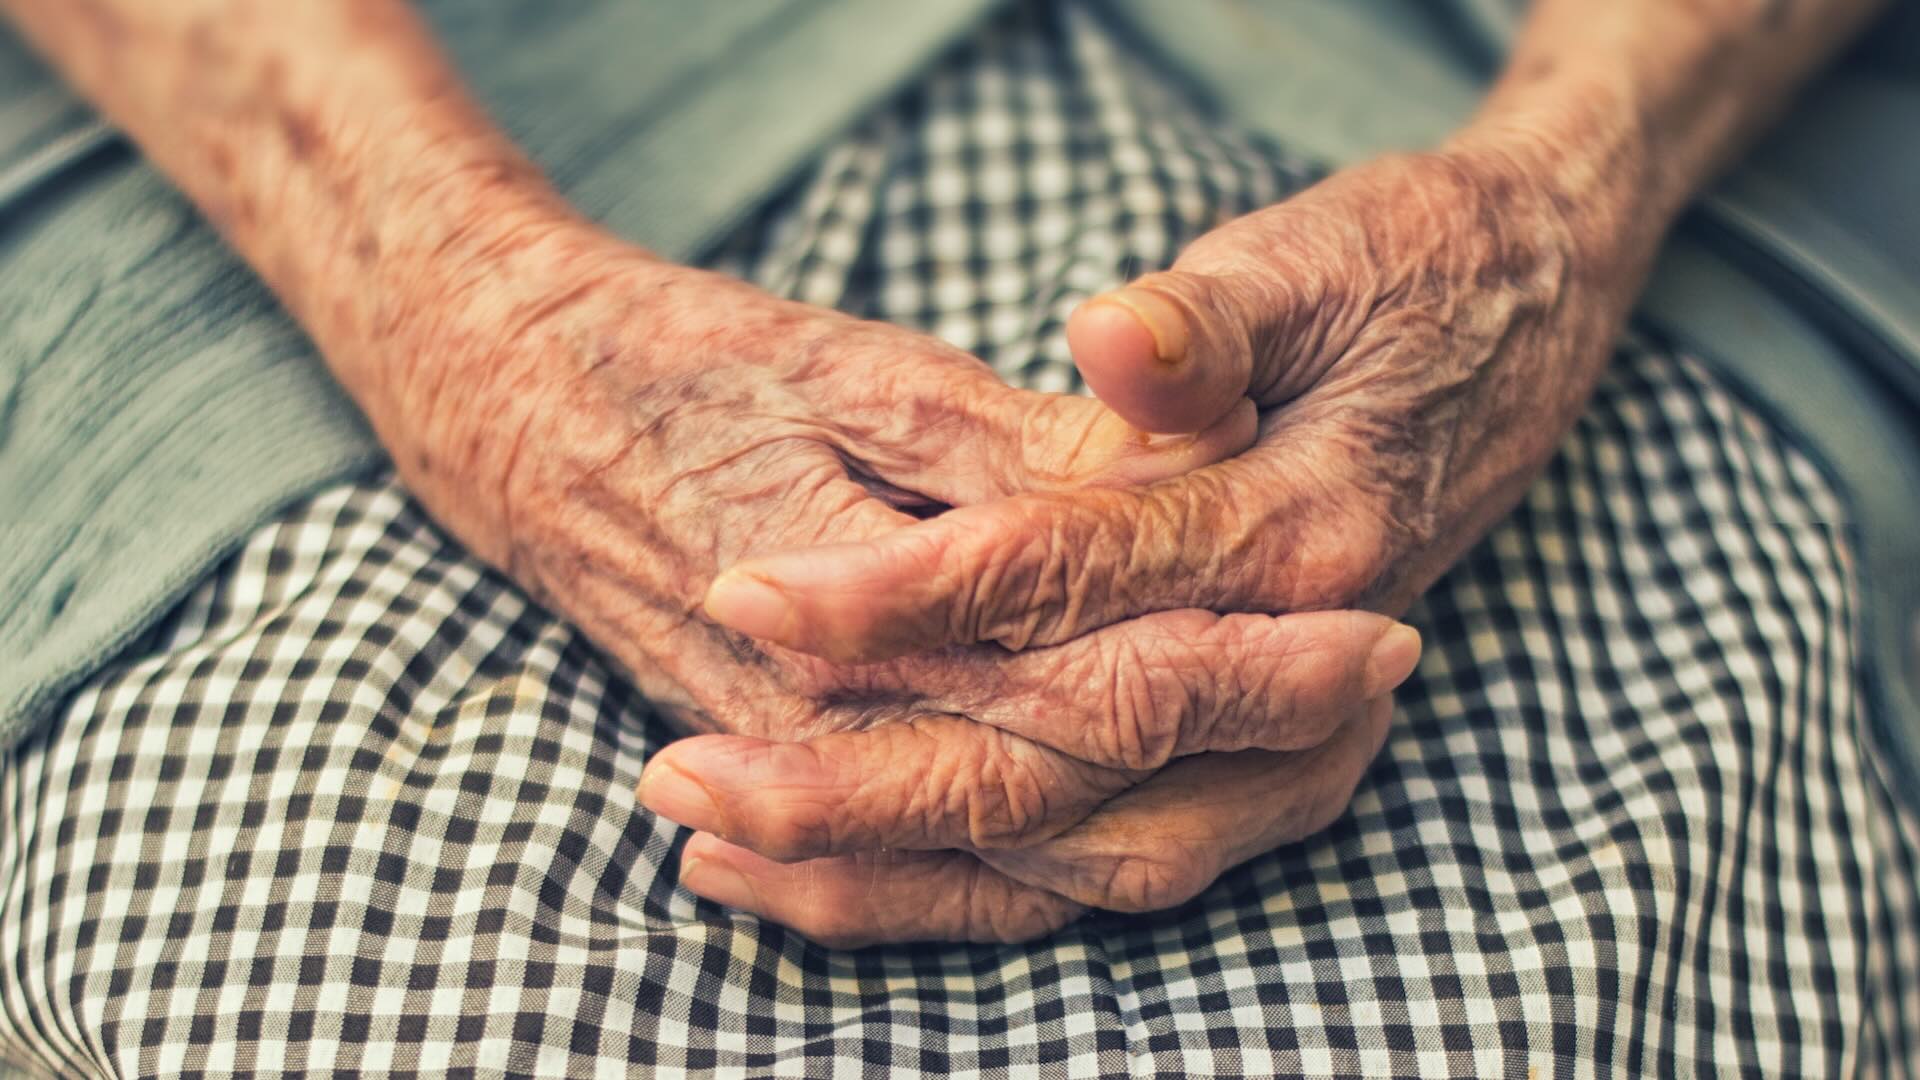 Женщина в возрасте 102 лет поделилась списком привычек, способствующих долголетию